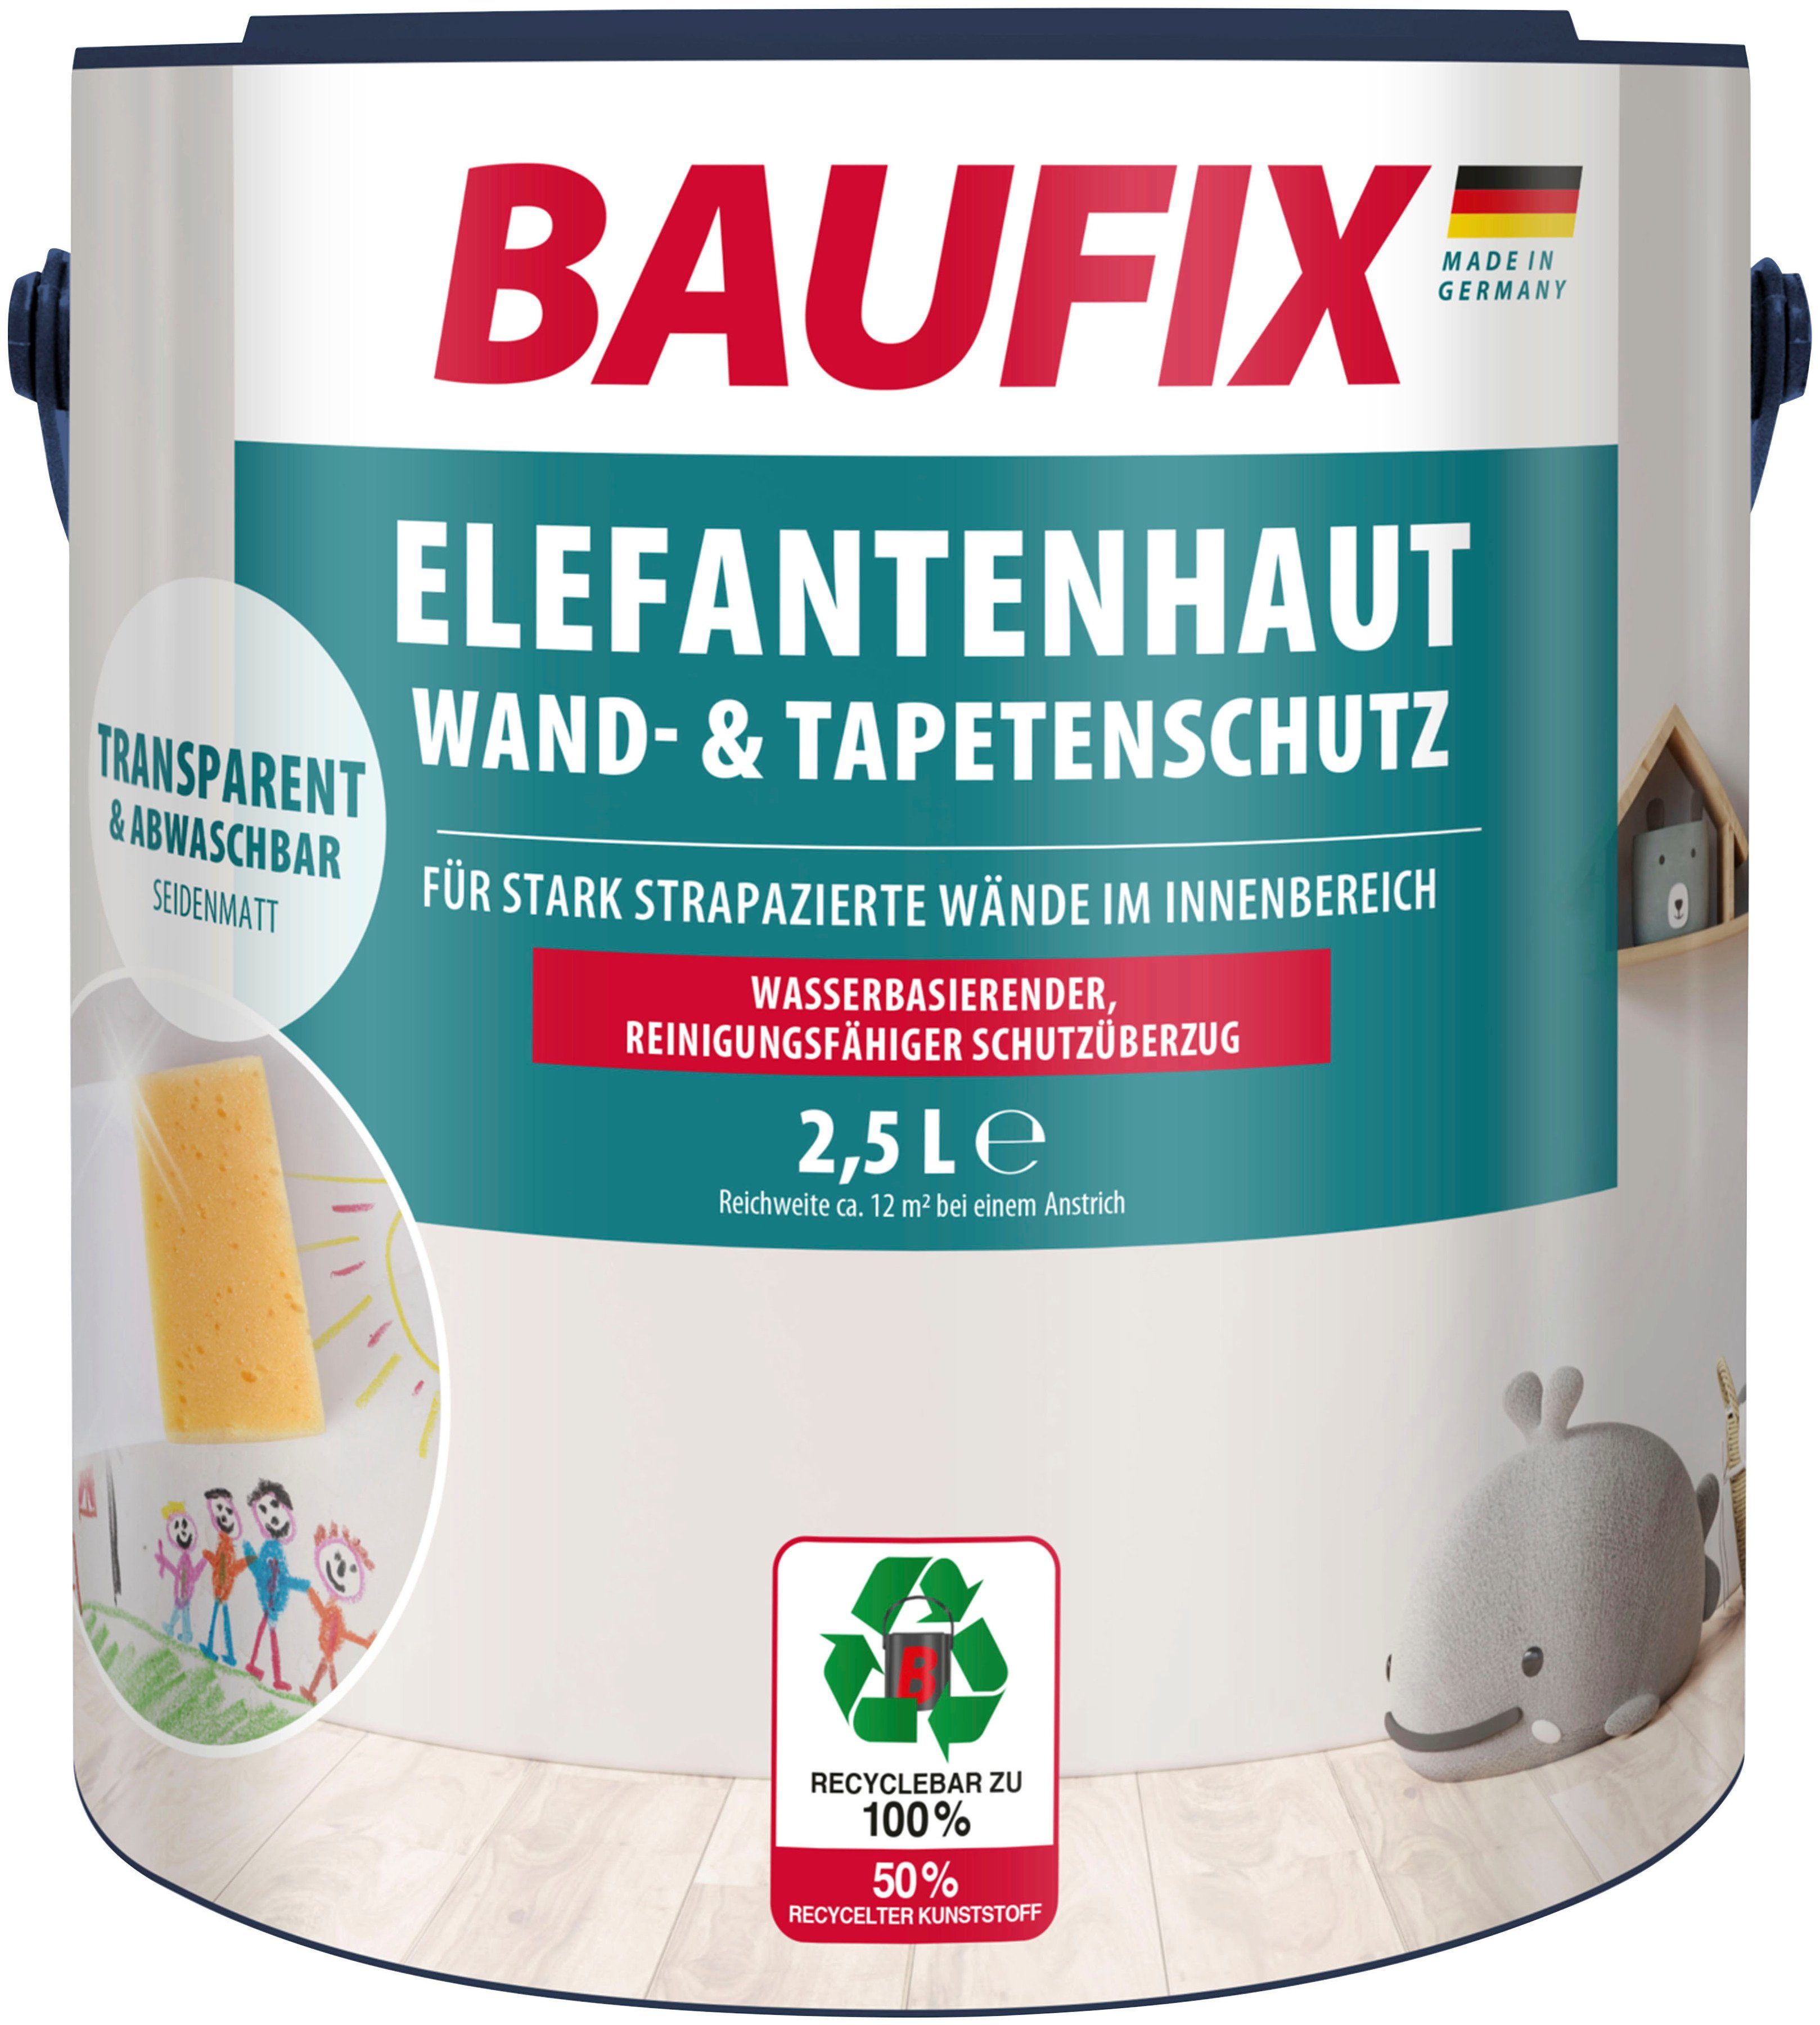 Baufix Wandfarbe Elefantenhaut Wand- & Tapetenschutz, abwaschbar, wasserbasierend, 2,5L, transparent seidenmatt